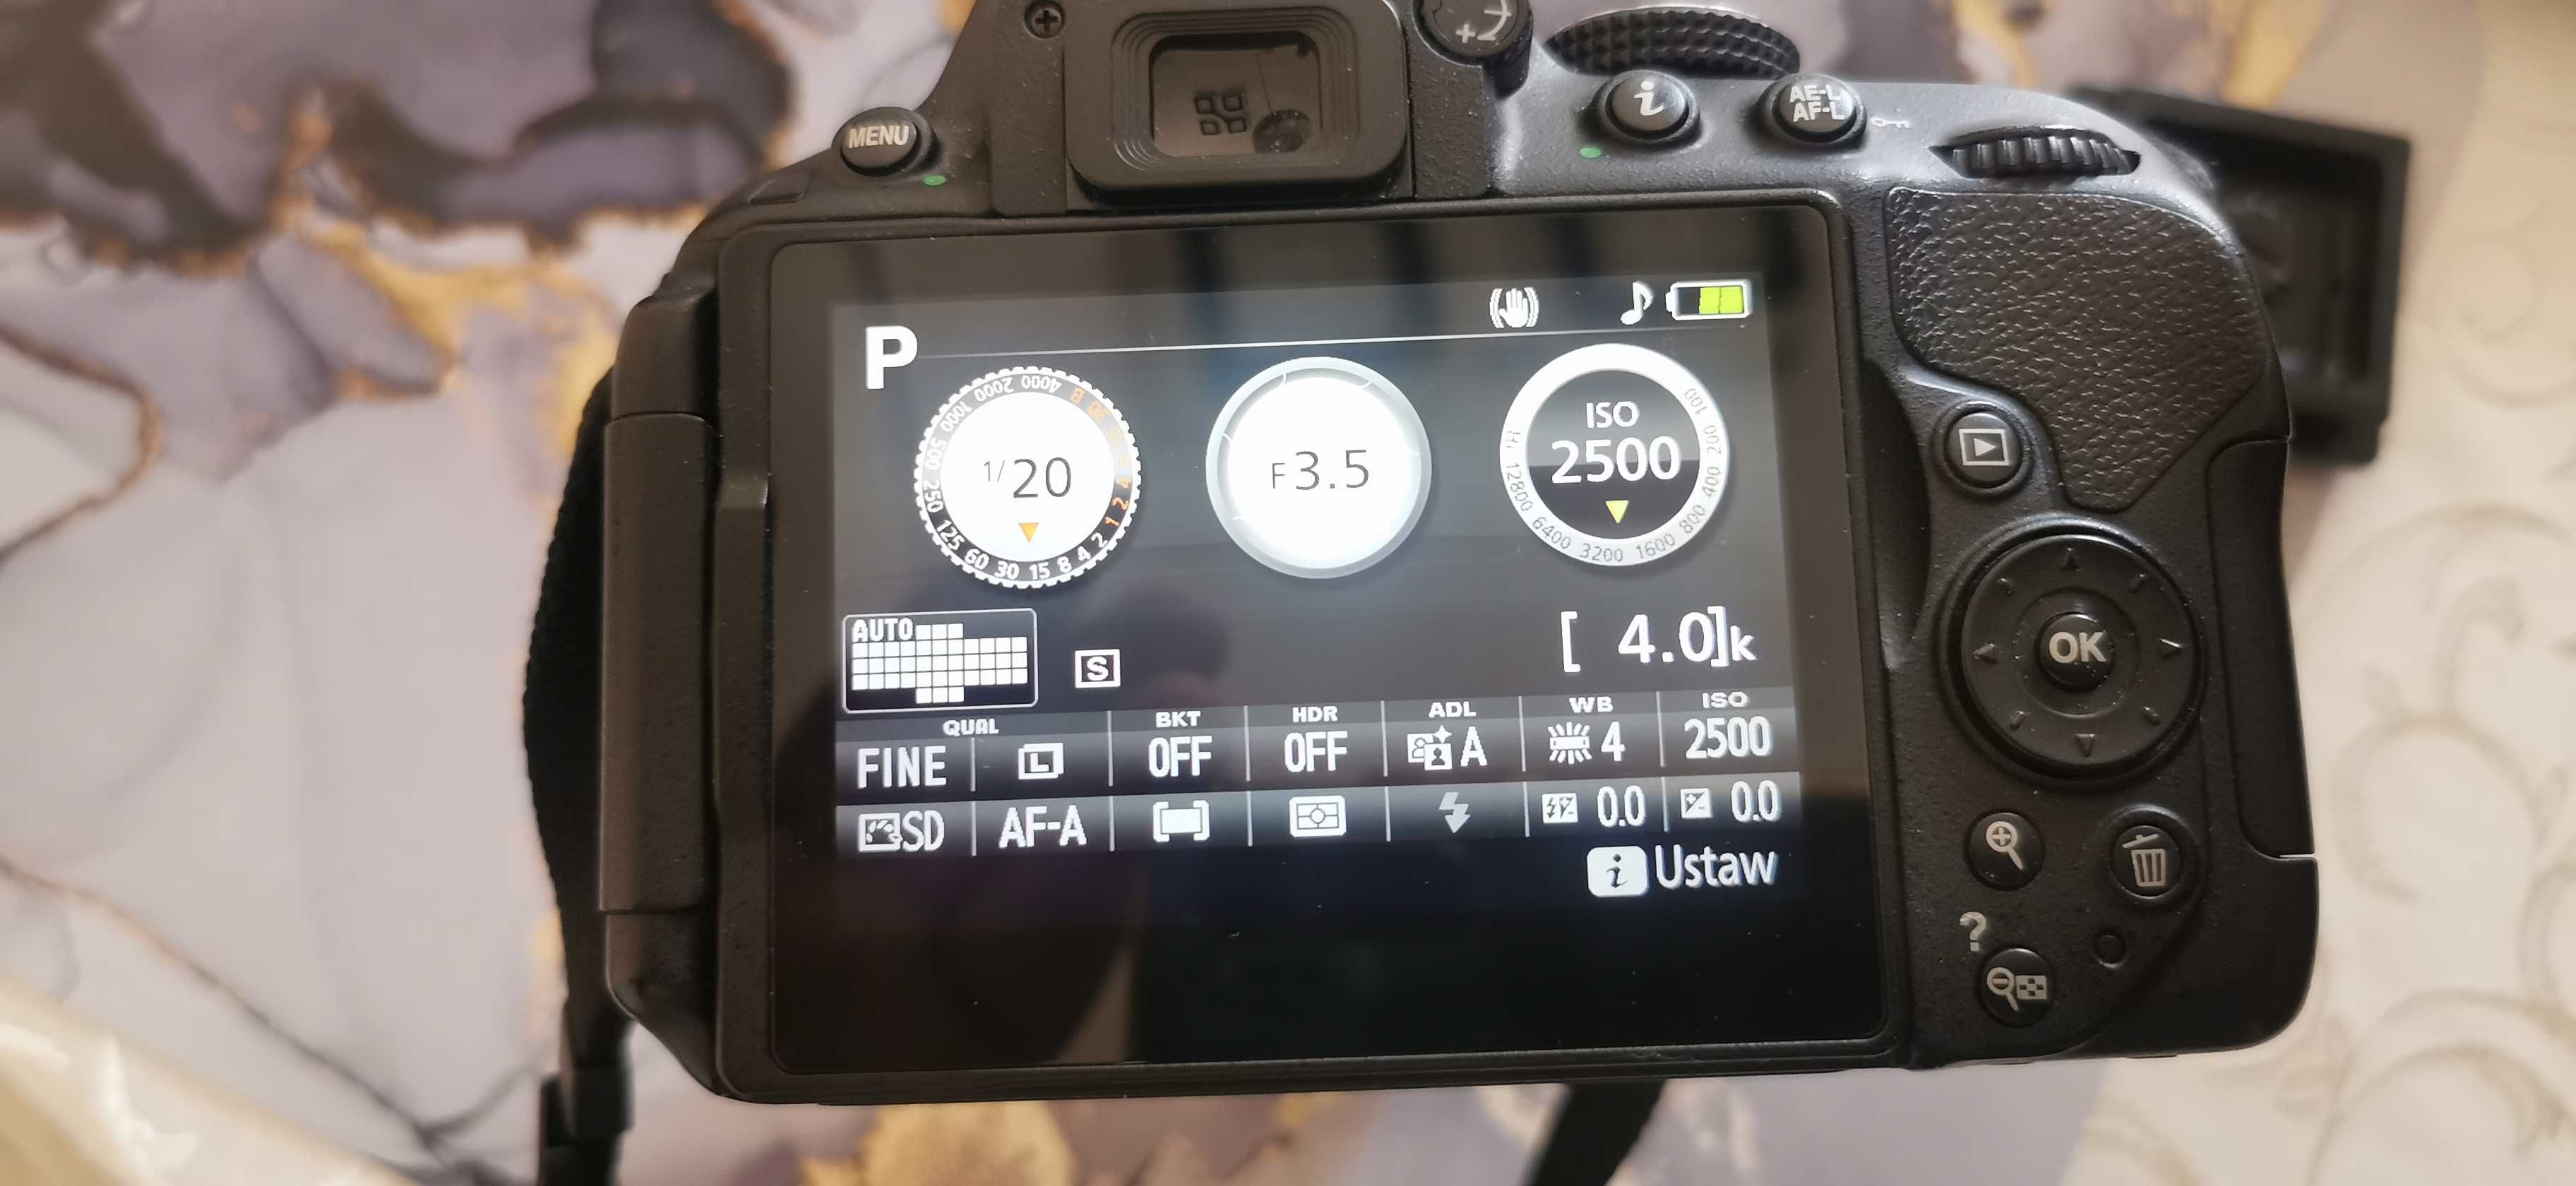 Lustrzanka Nikon D5300 +karta 64GB+ statyw naramienny + torba